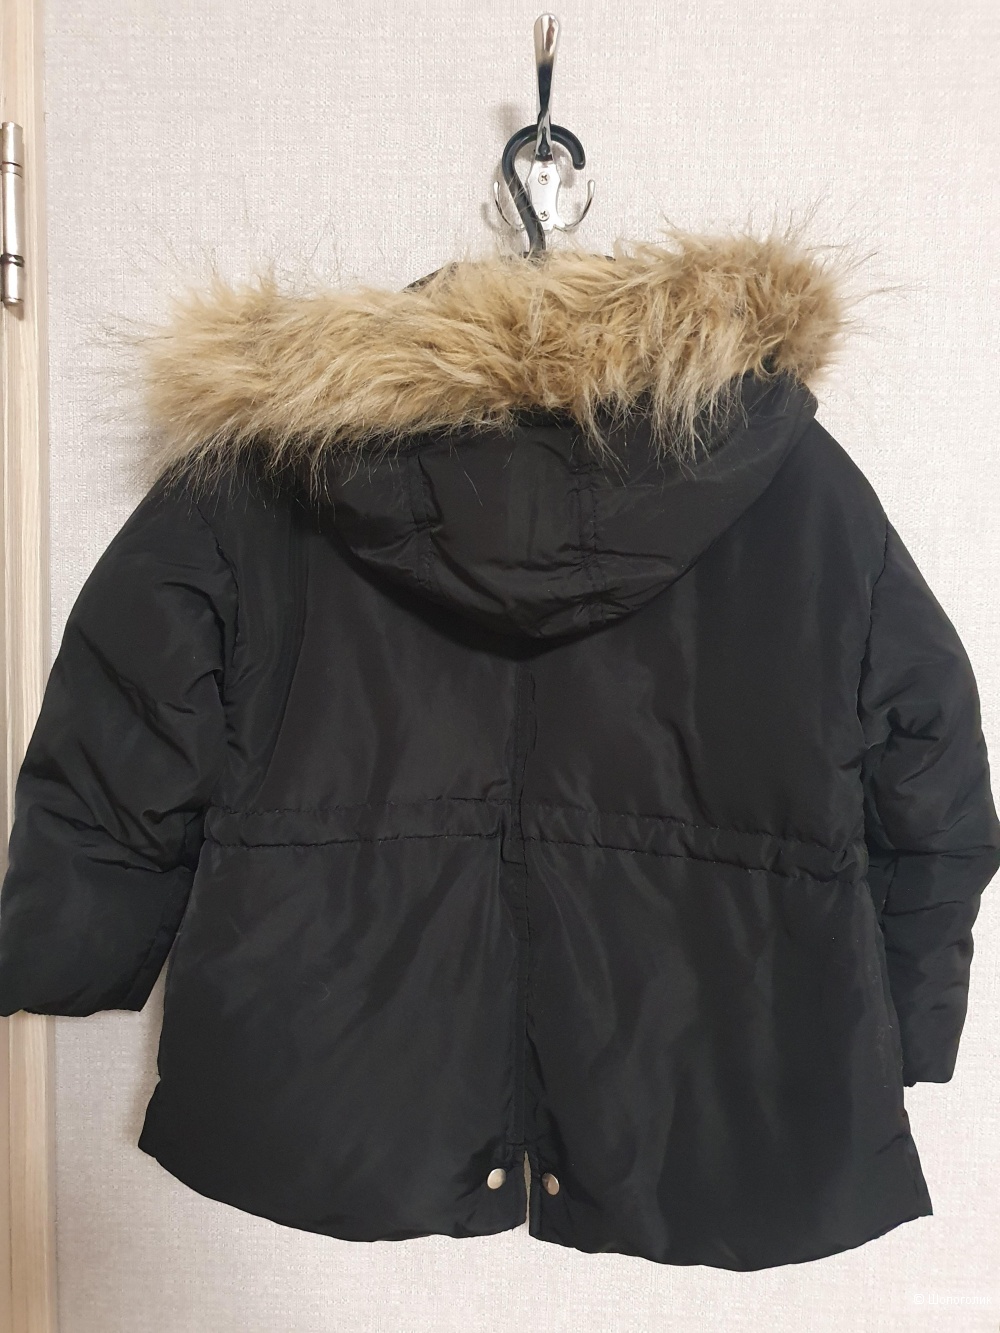 Куртка детская Zara 116 размер